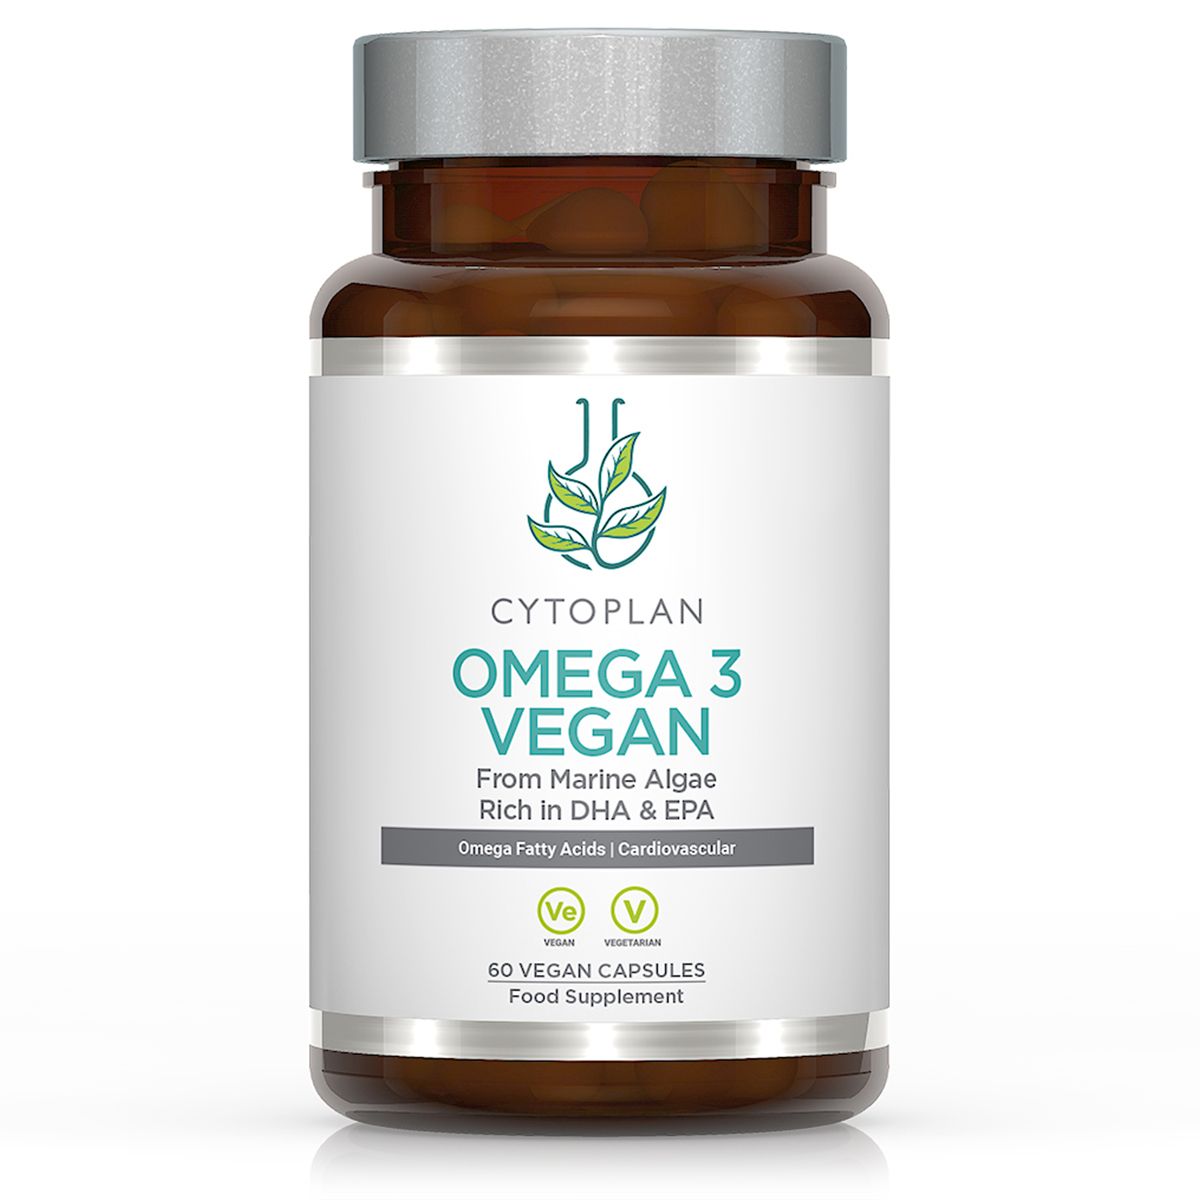 Vegan Omega 3, EPA and DHA from marine algae